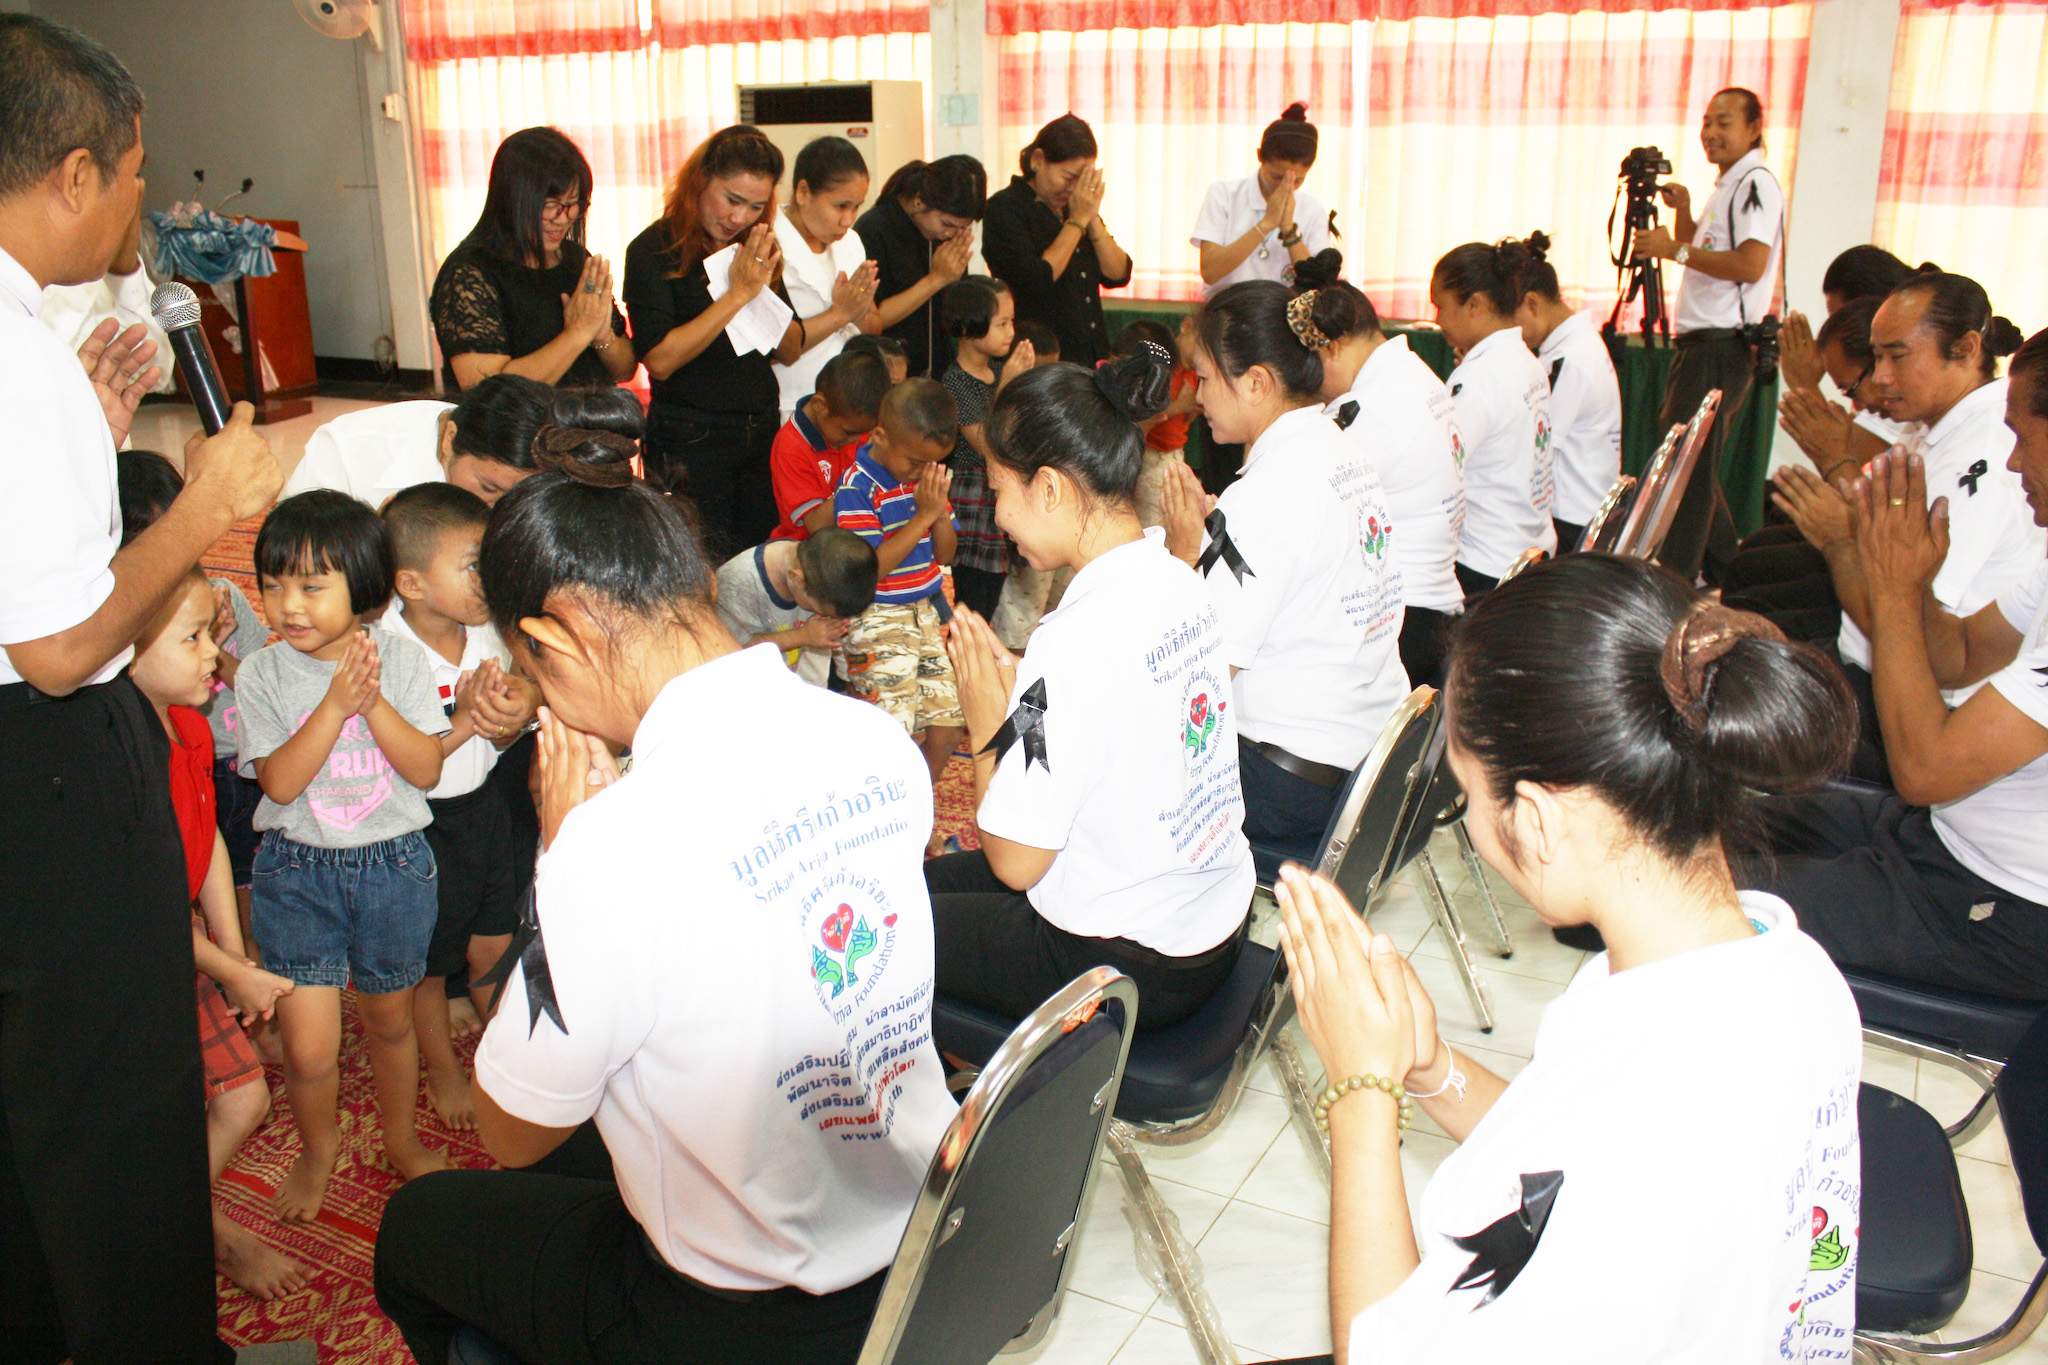 โครงการช่วยเหลือเด็กกำพร้า  วันที่ 21 ตุลาคม 2559  ณ สถานสงเคราะห์เด็กบ้านแคนทอง  อ.เมือง จ.ขอนแก่น